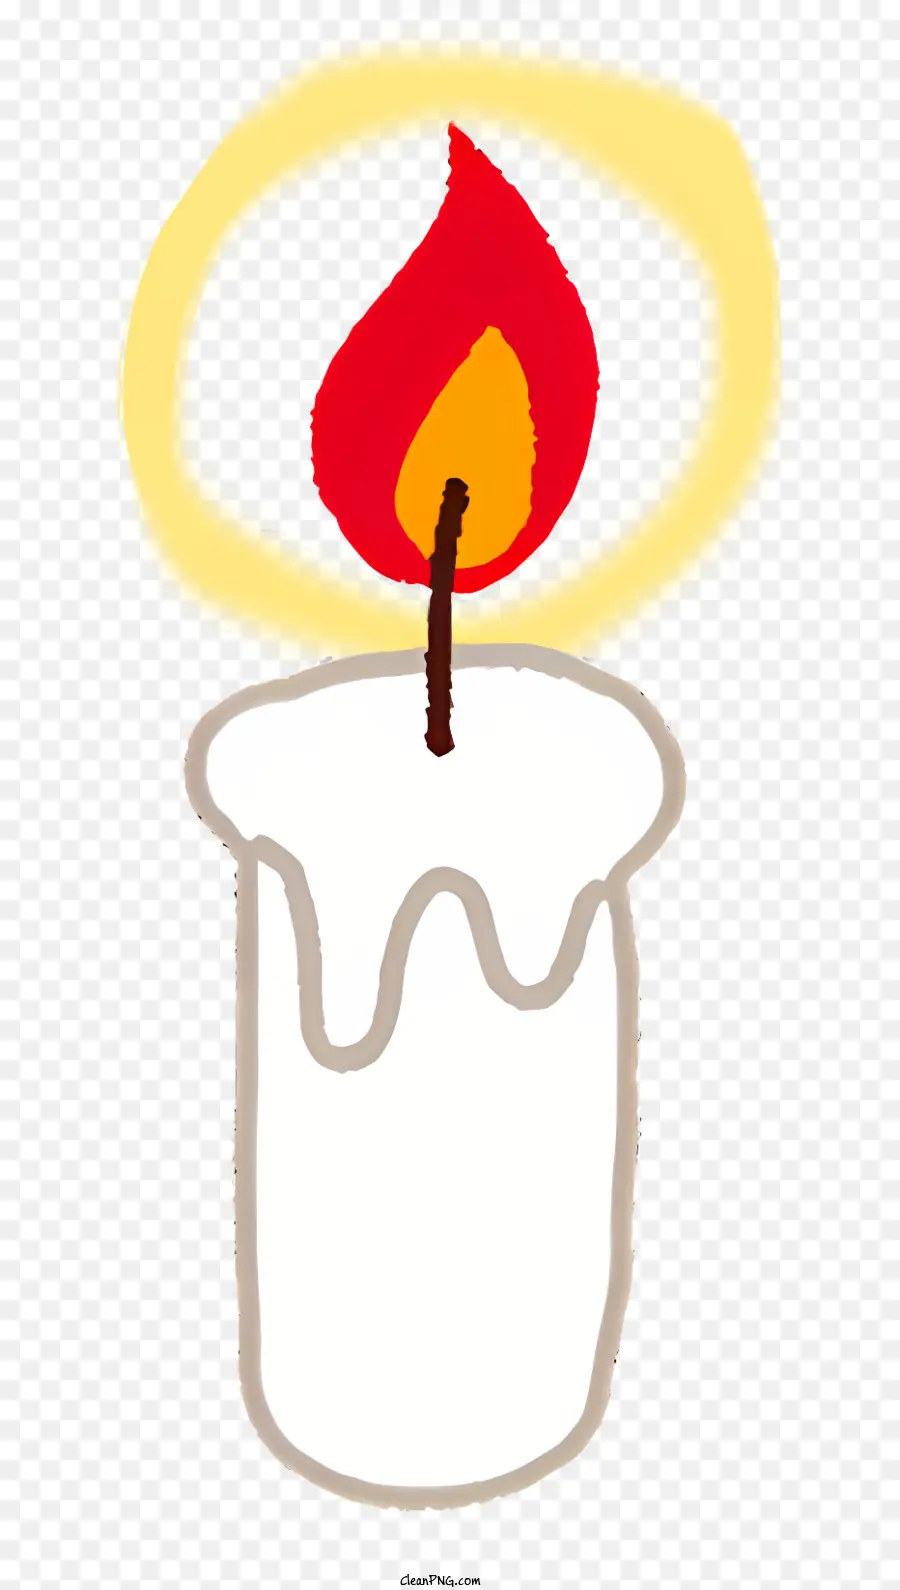 sinh nhật nến - Hình ảnh đơn giản của cây nến đang cháy trong nhà thờ